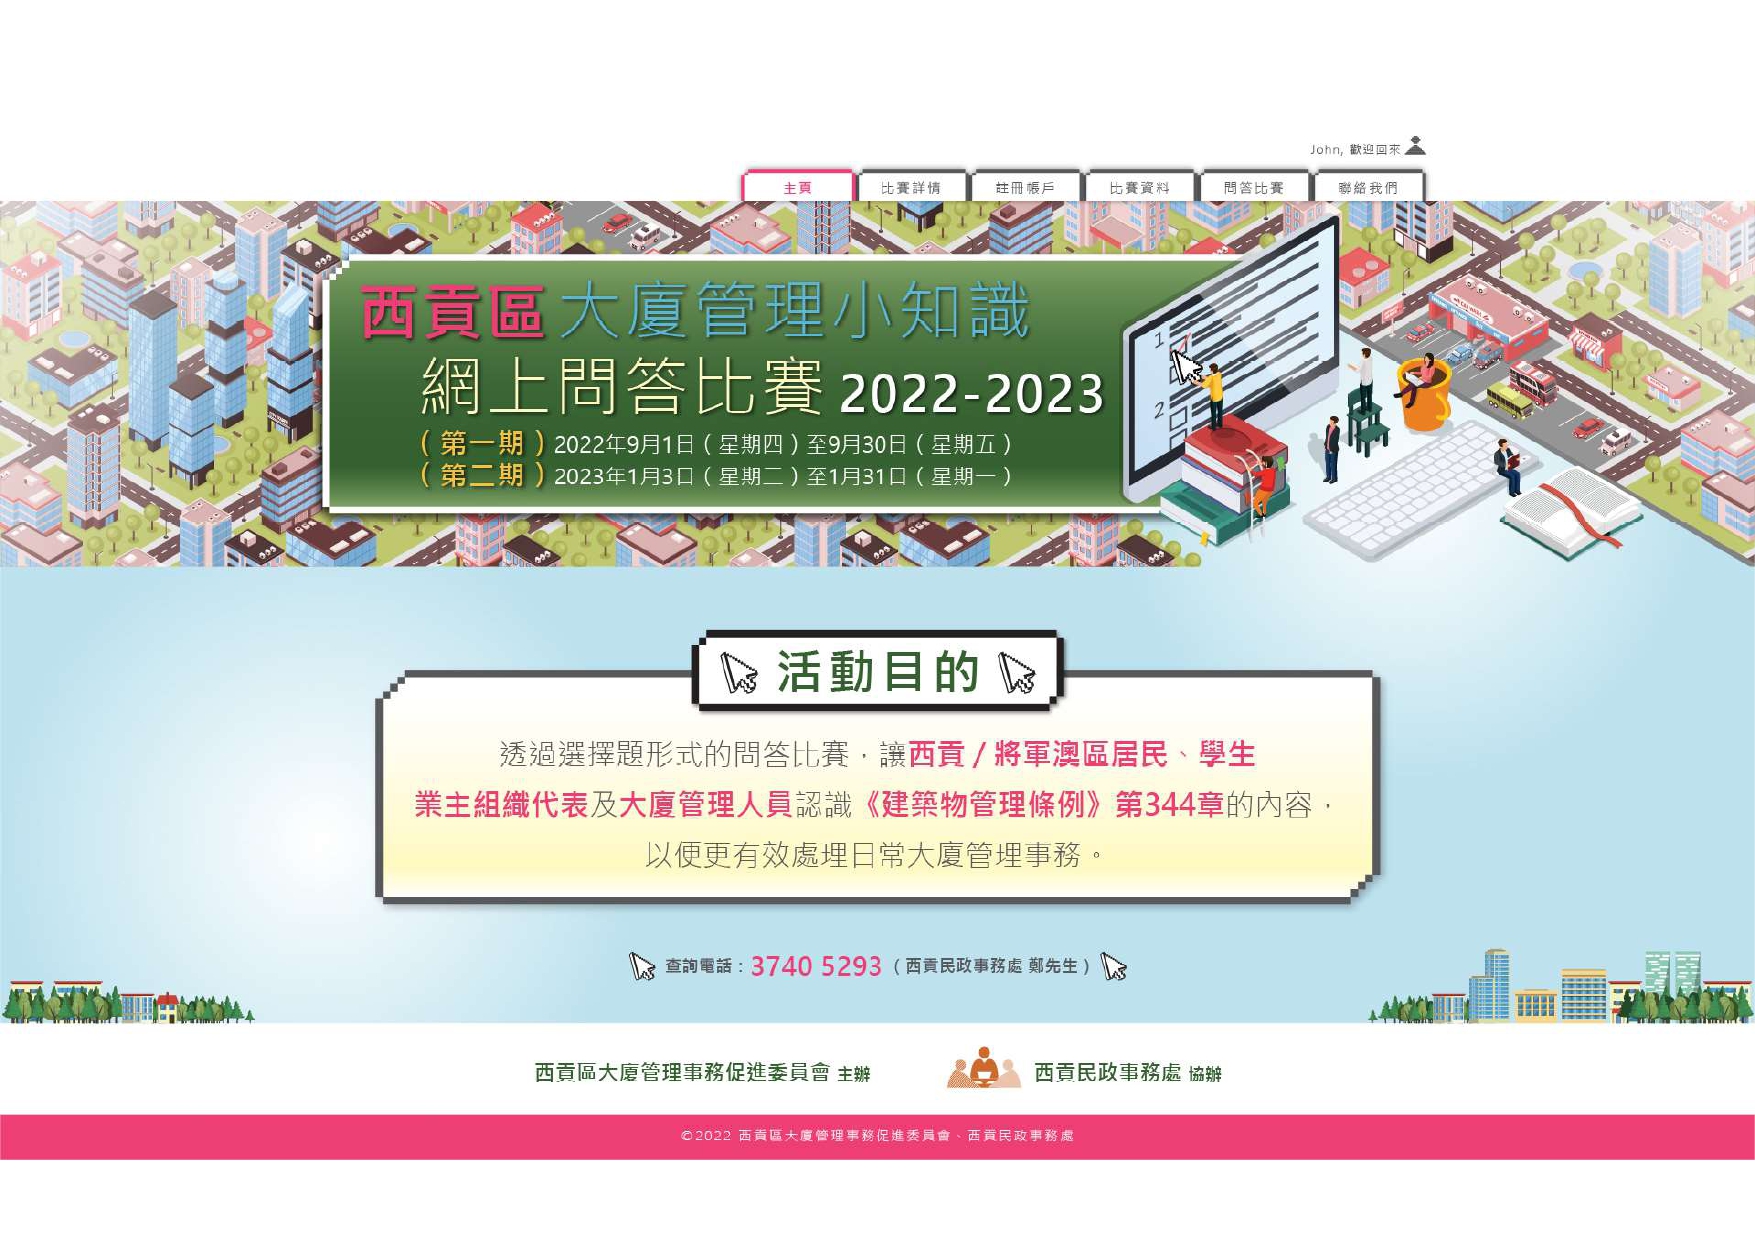 西贡区大厦管理小知识网上问答比赛2022-2023 (第一期)